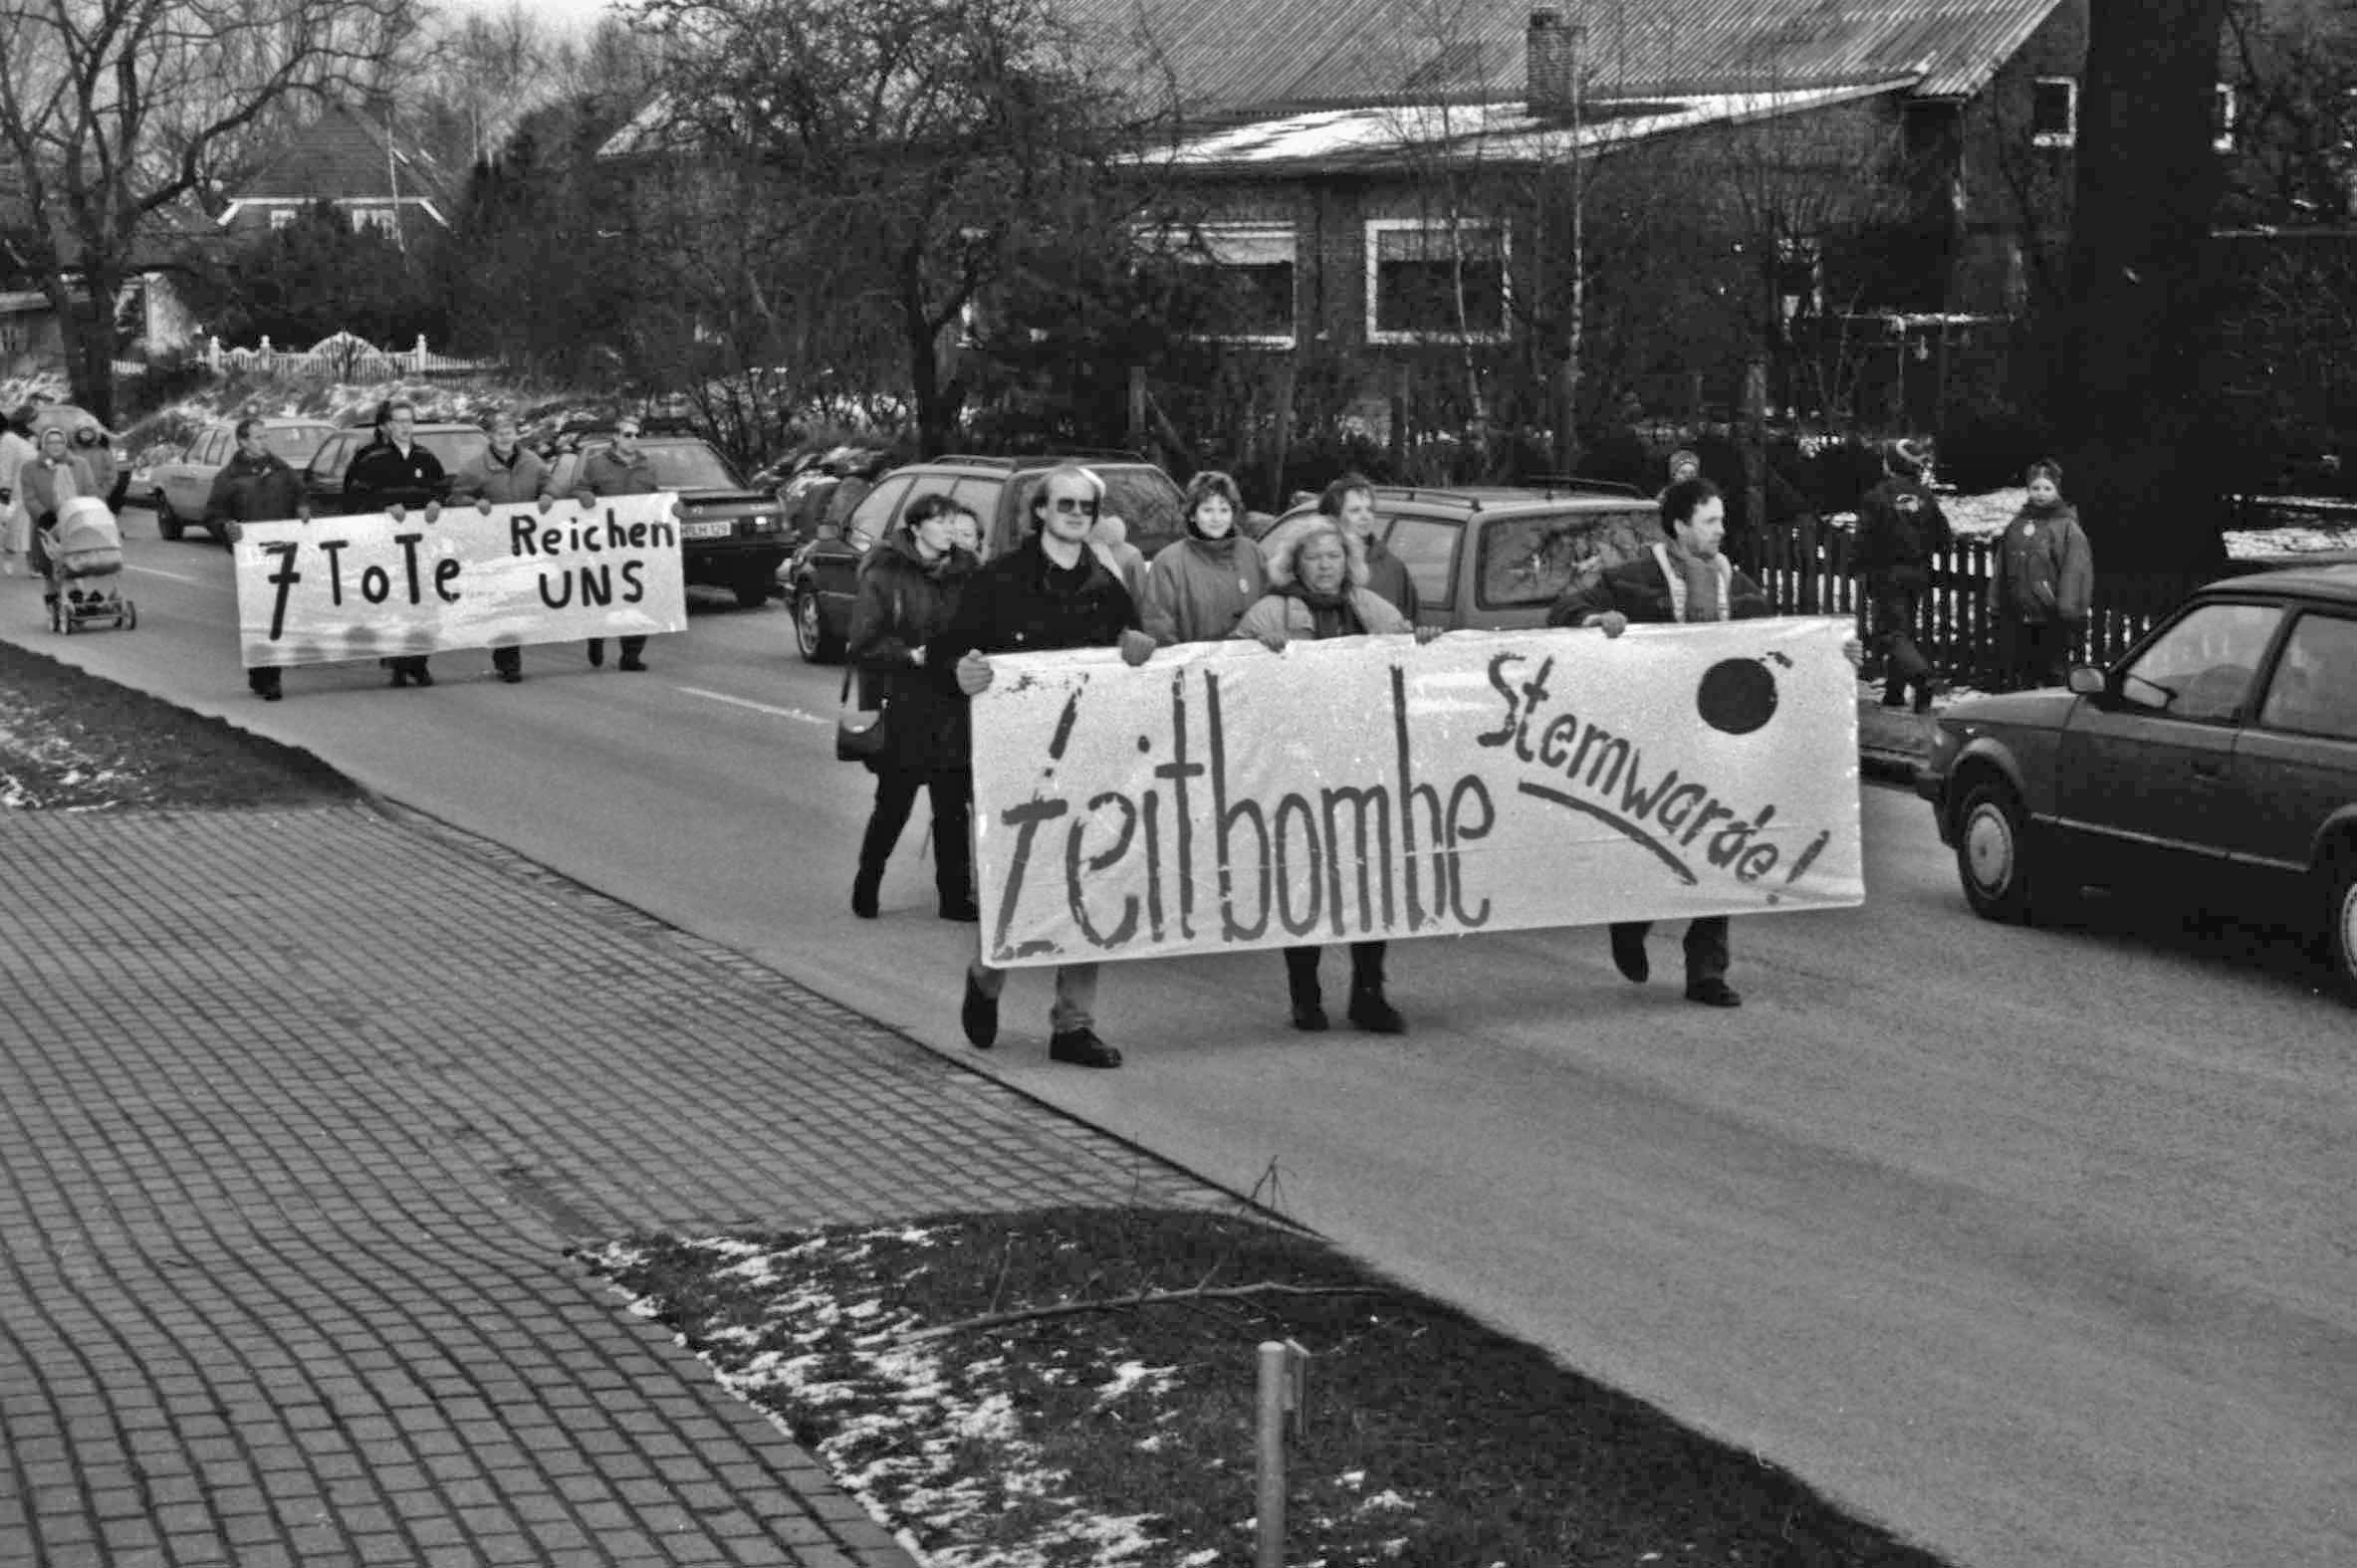 Stemwarde: Bürgerinitiative Stemwarde: Demonstration gegen Durchgangsverkehr und für ein Tempolimit, 1993